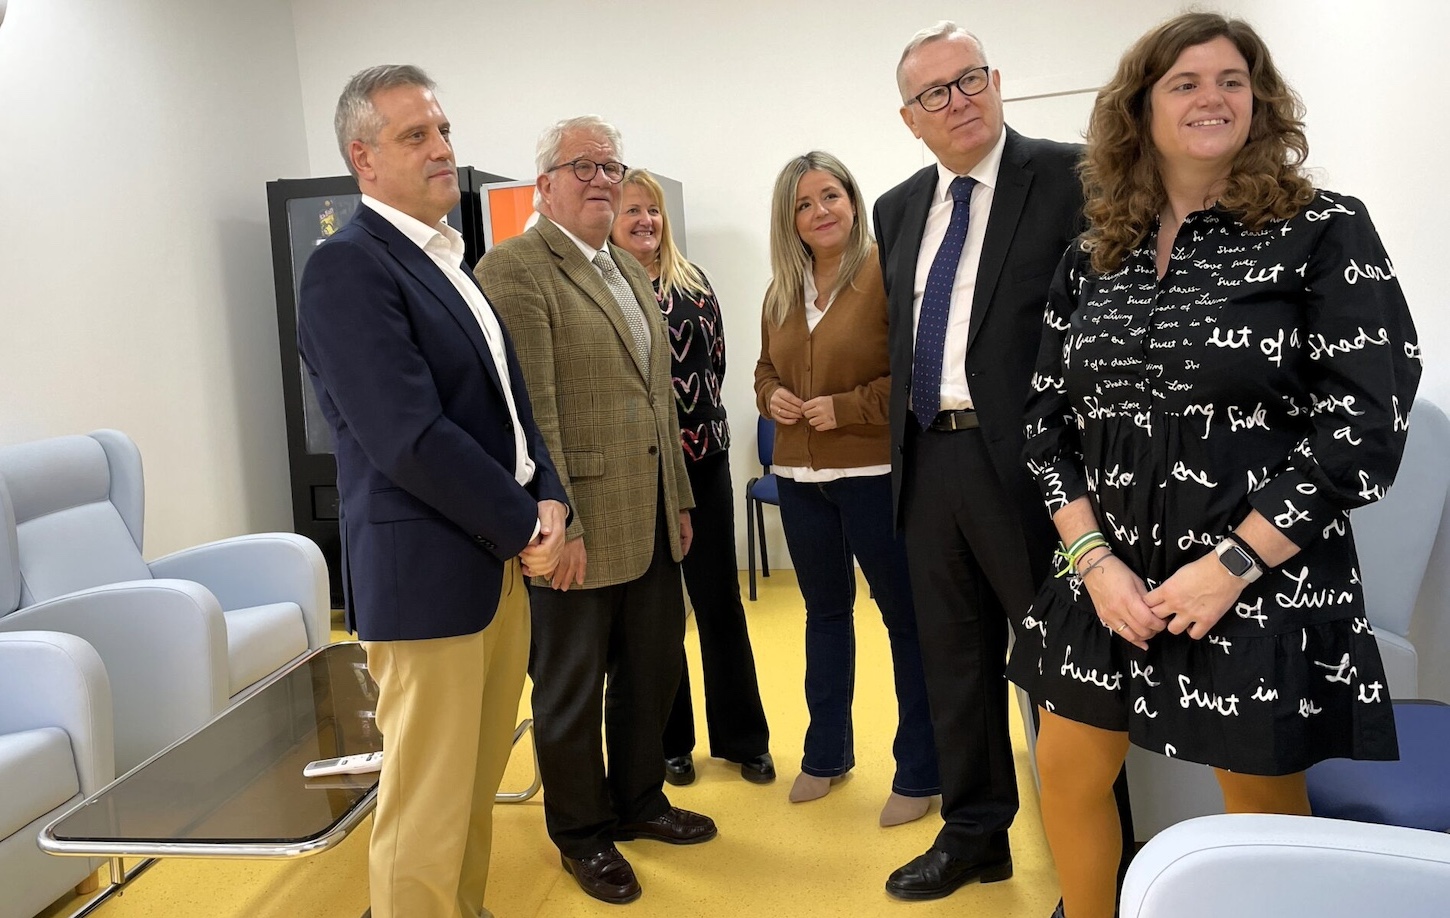 Habilitan una sala de espera en el Instituto de Medicina Forense de Jaén para los familiares de un fallecido